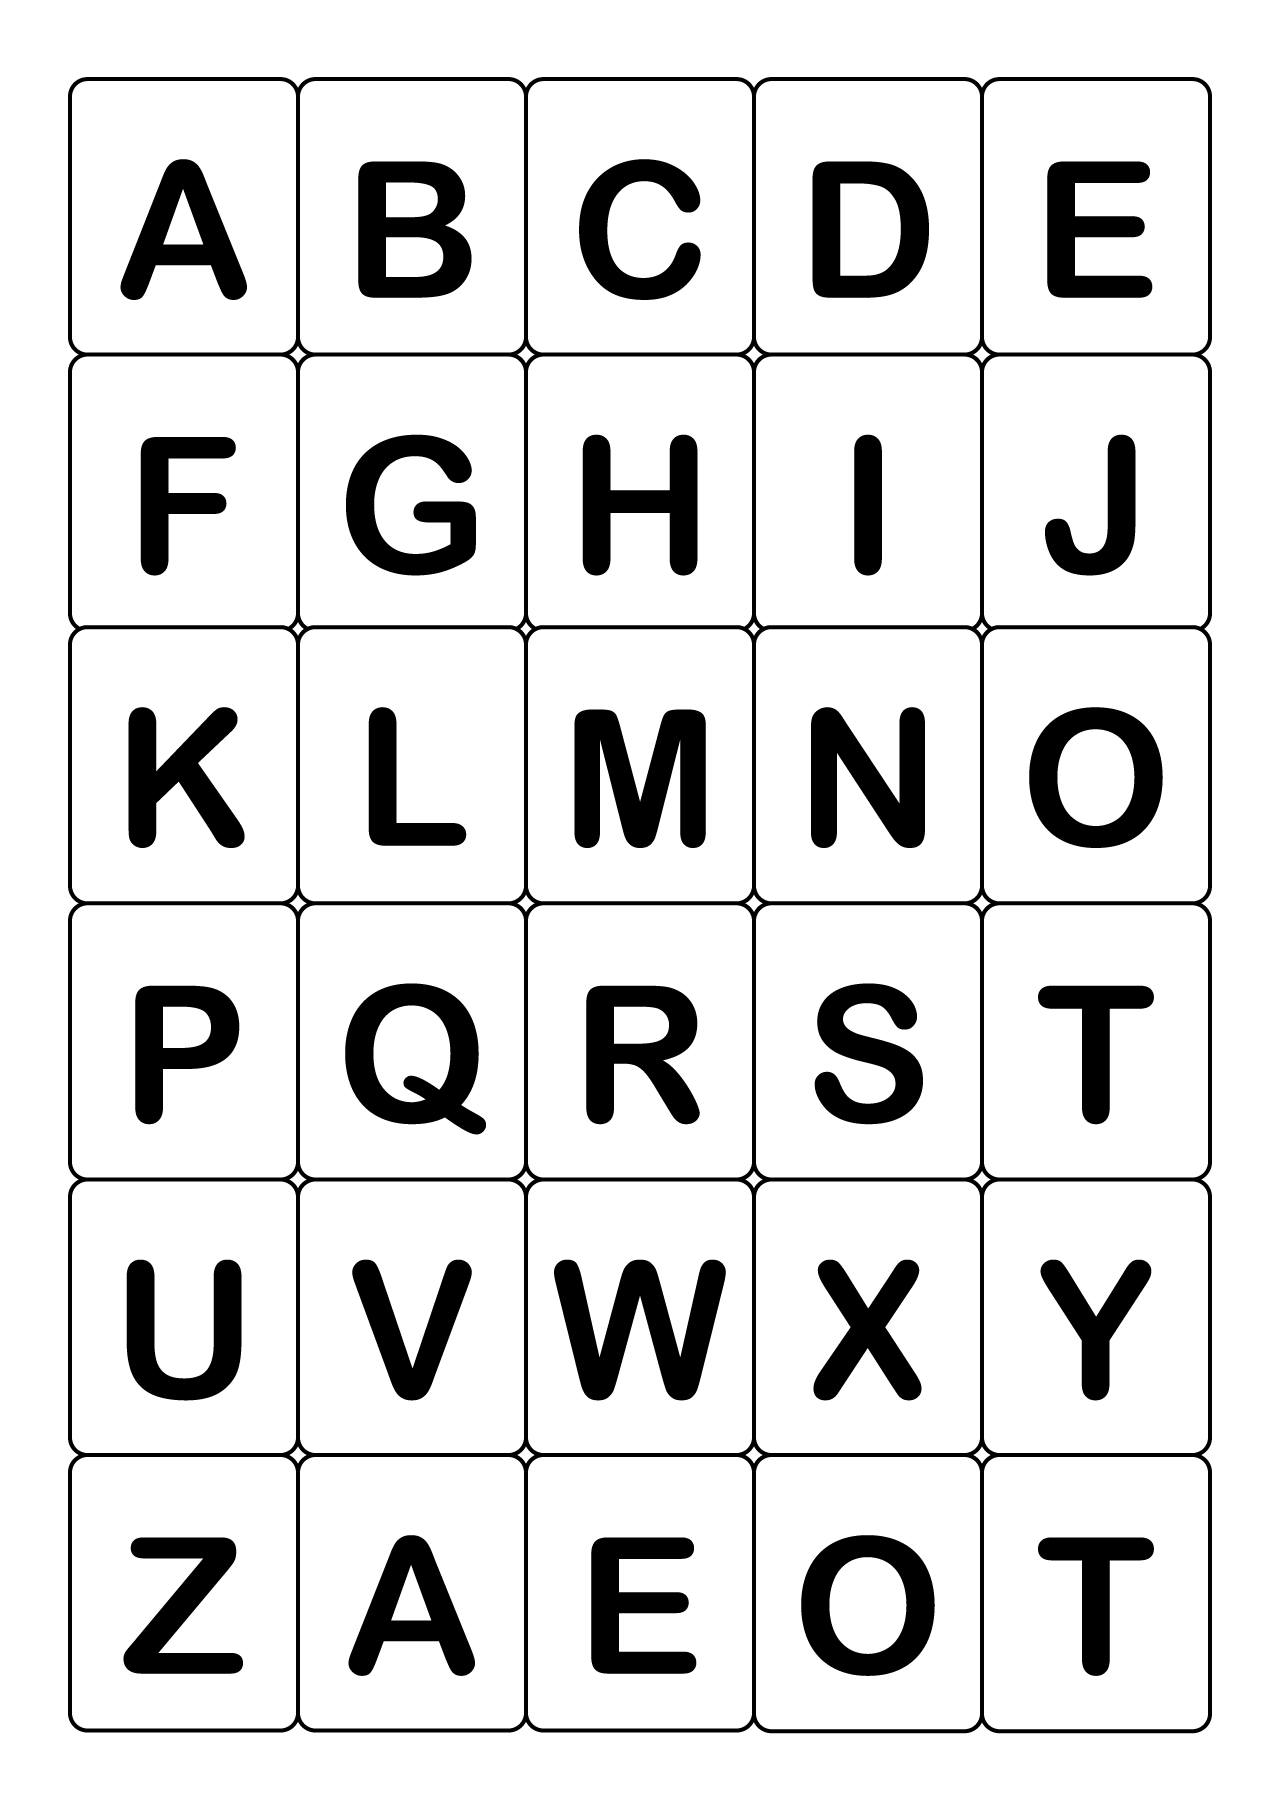 Abc 英語アルファベットカード 大文字 イラストのフリー素材 イラストイメージ